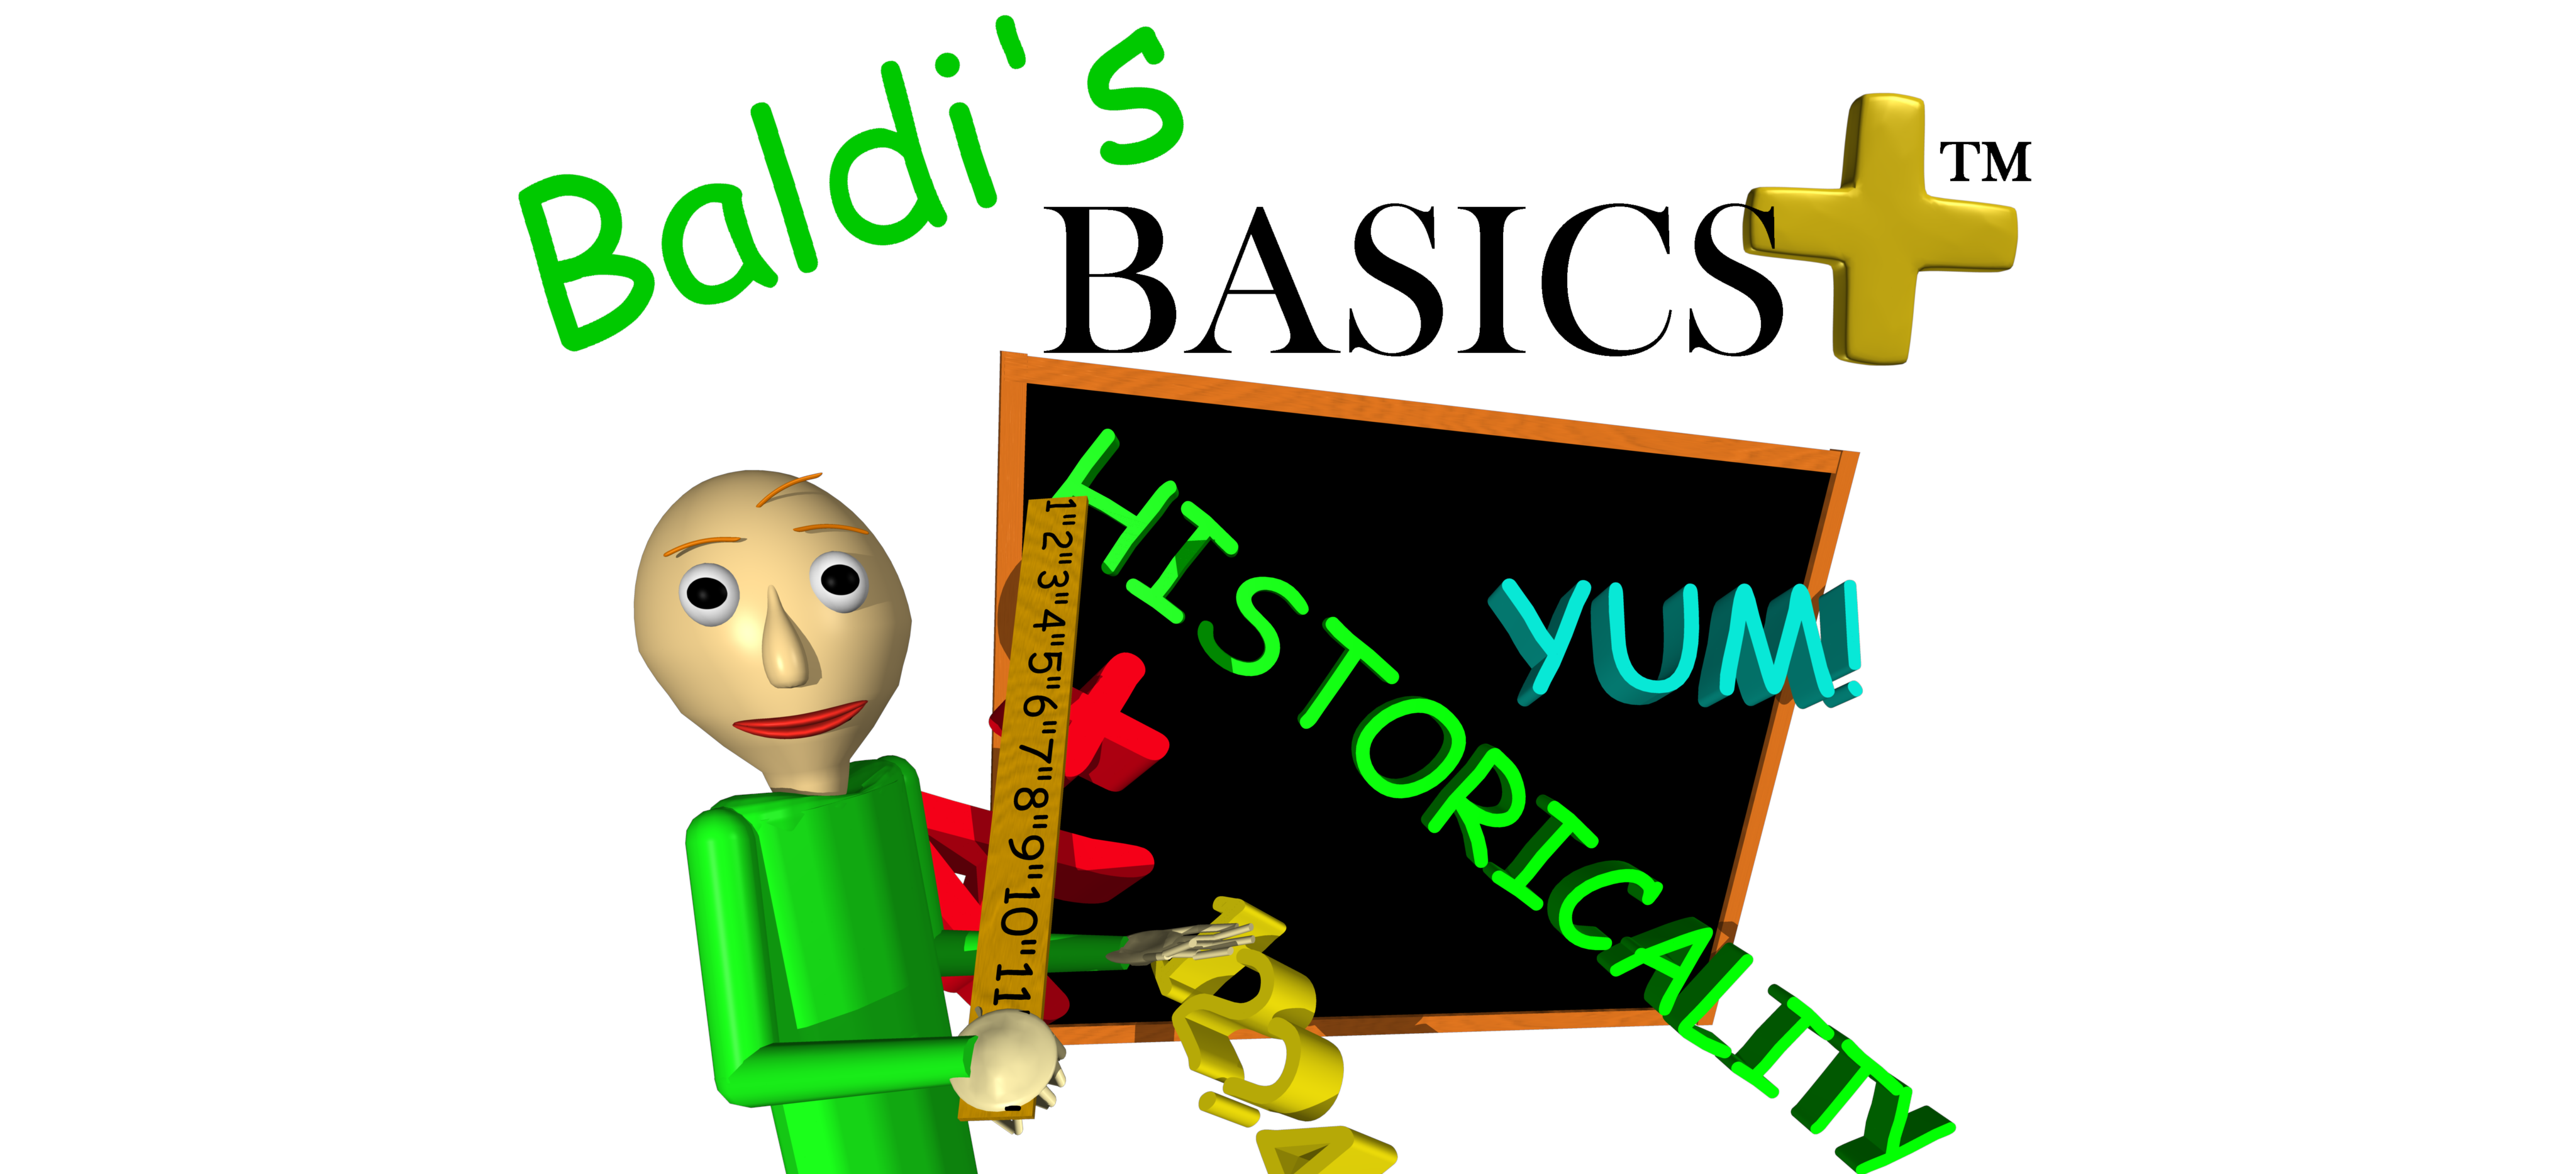 Baldi Basics Game Free Download